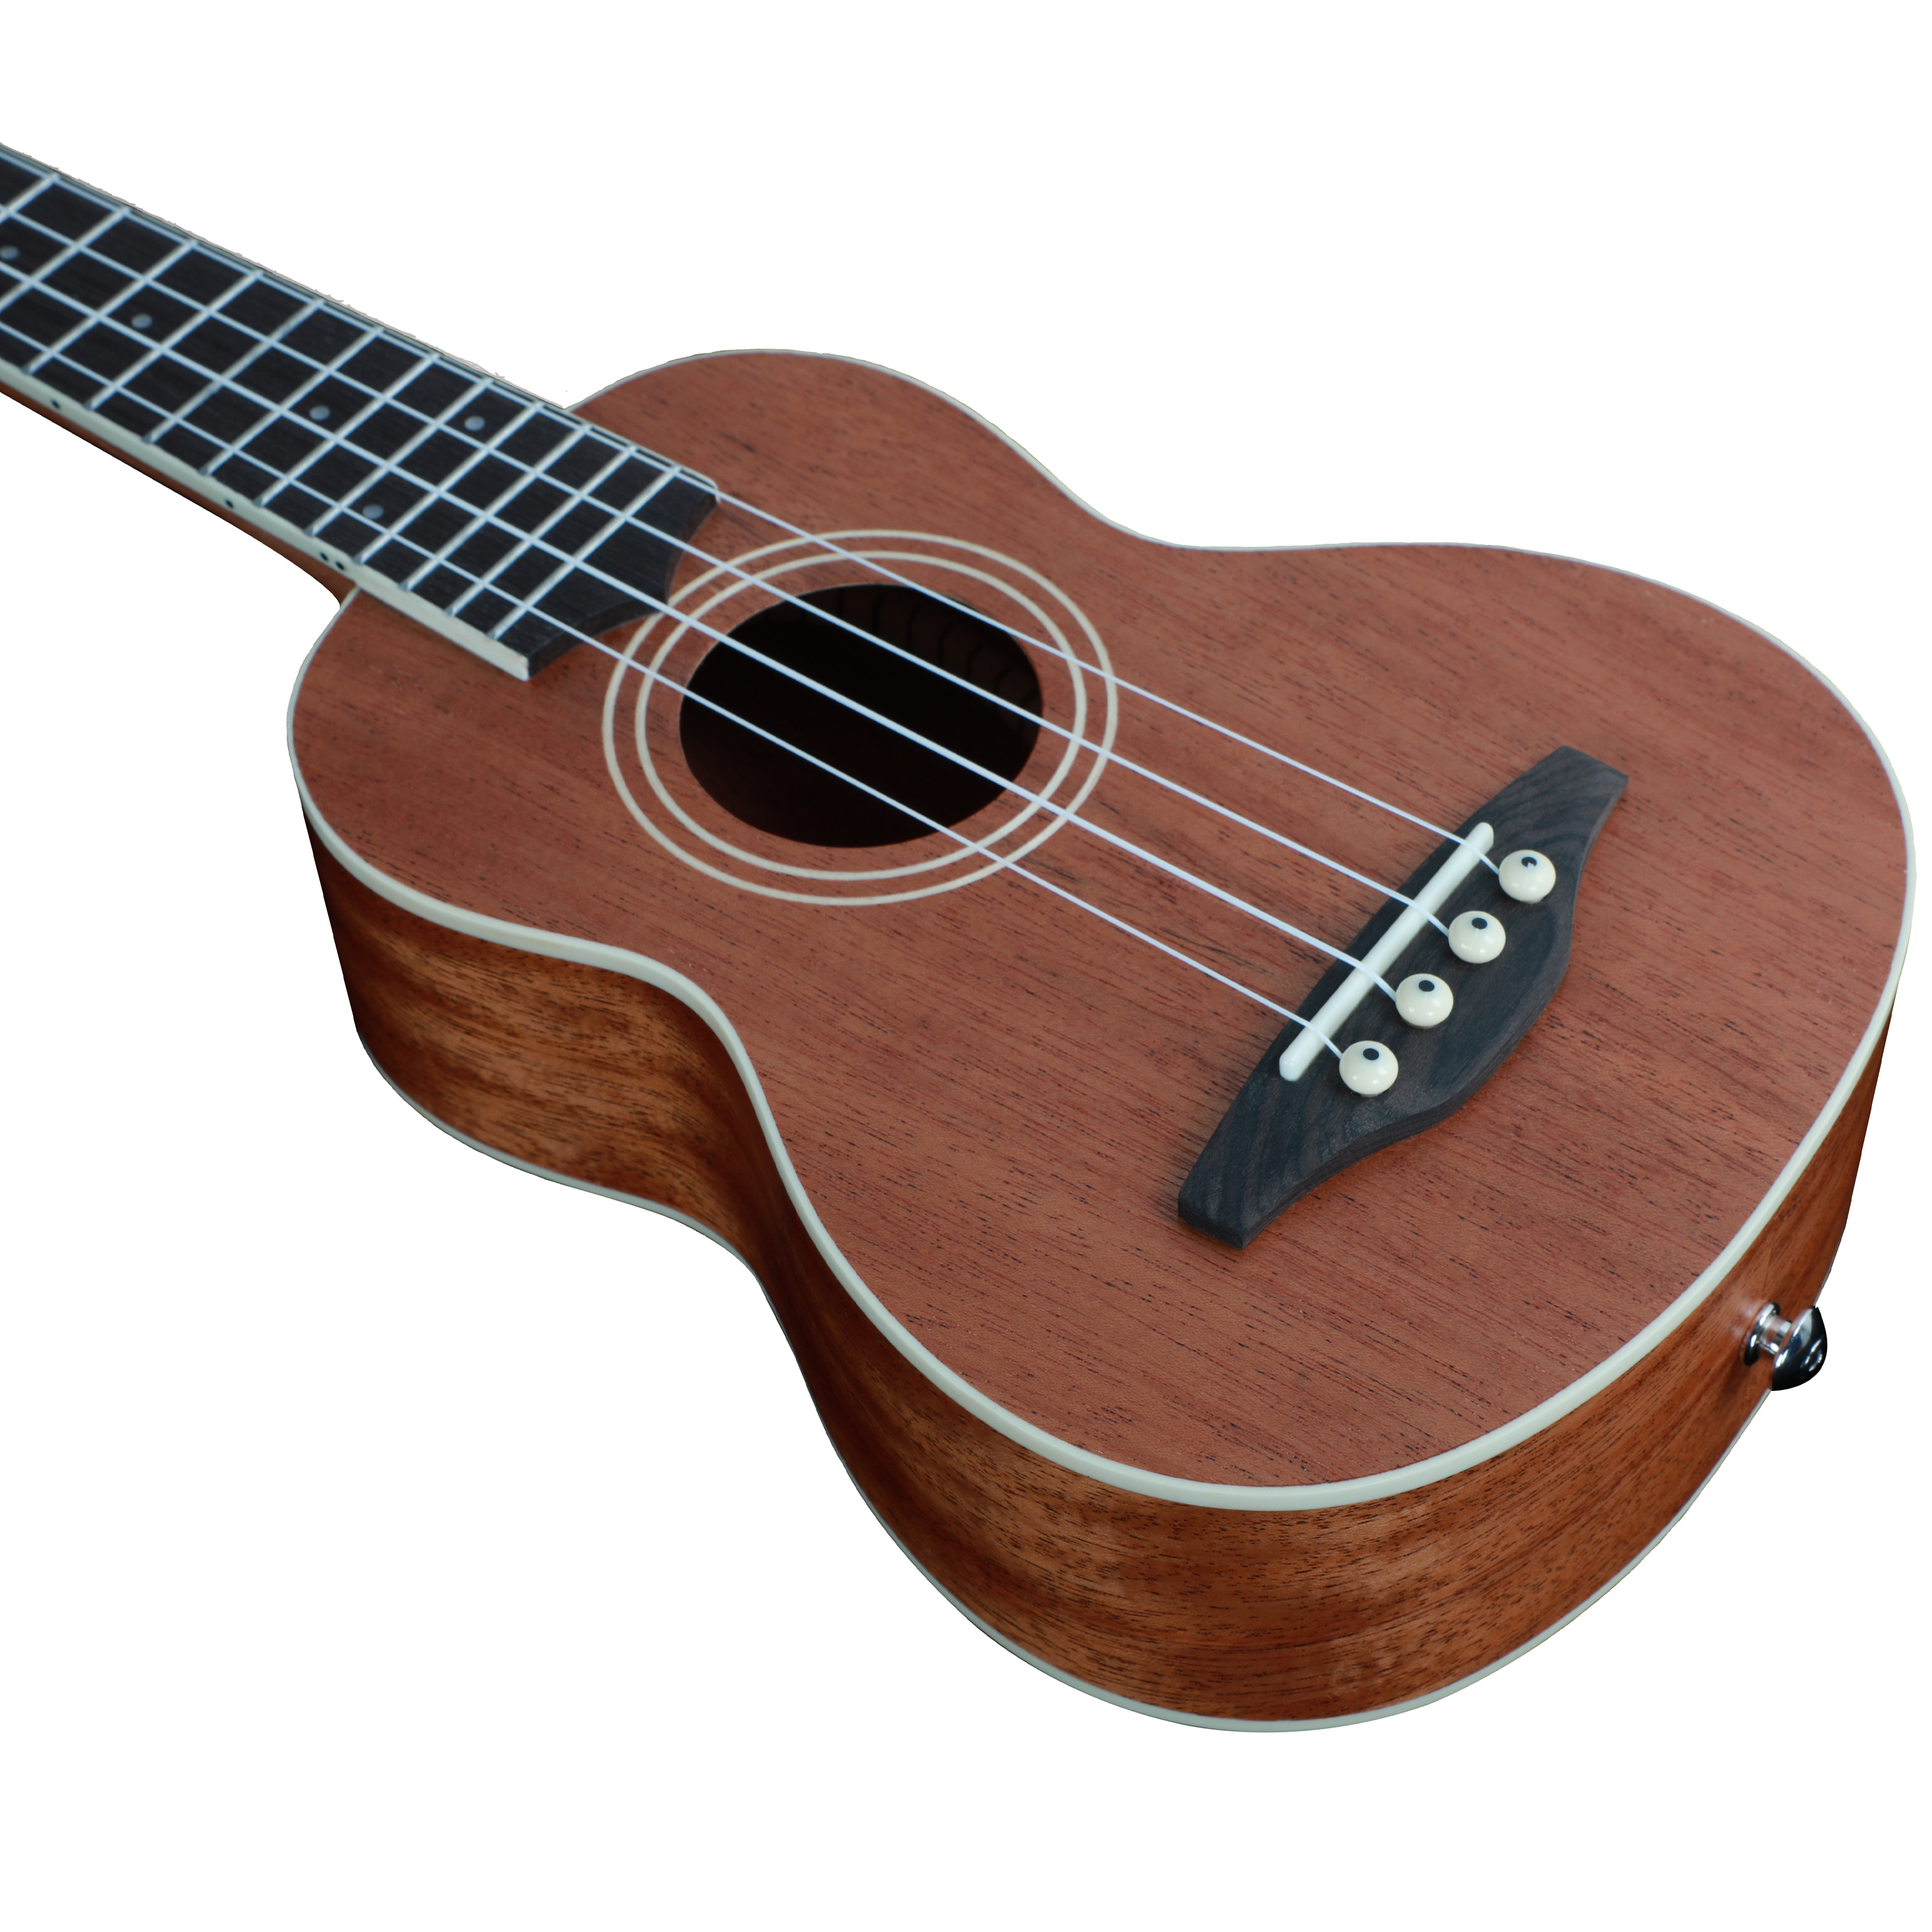 Made in China high quality ukulele of Soprano